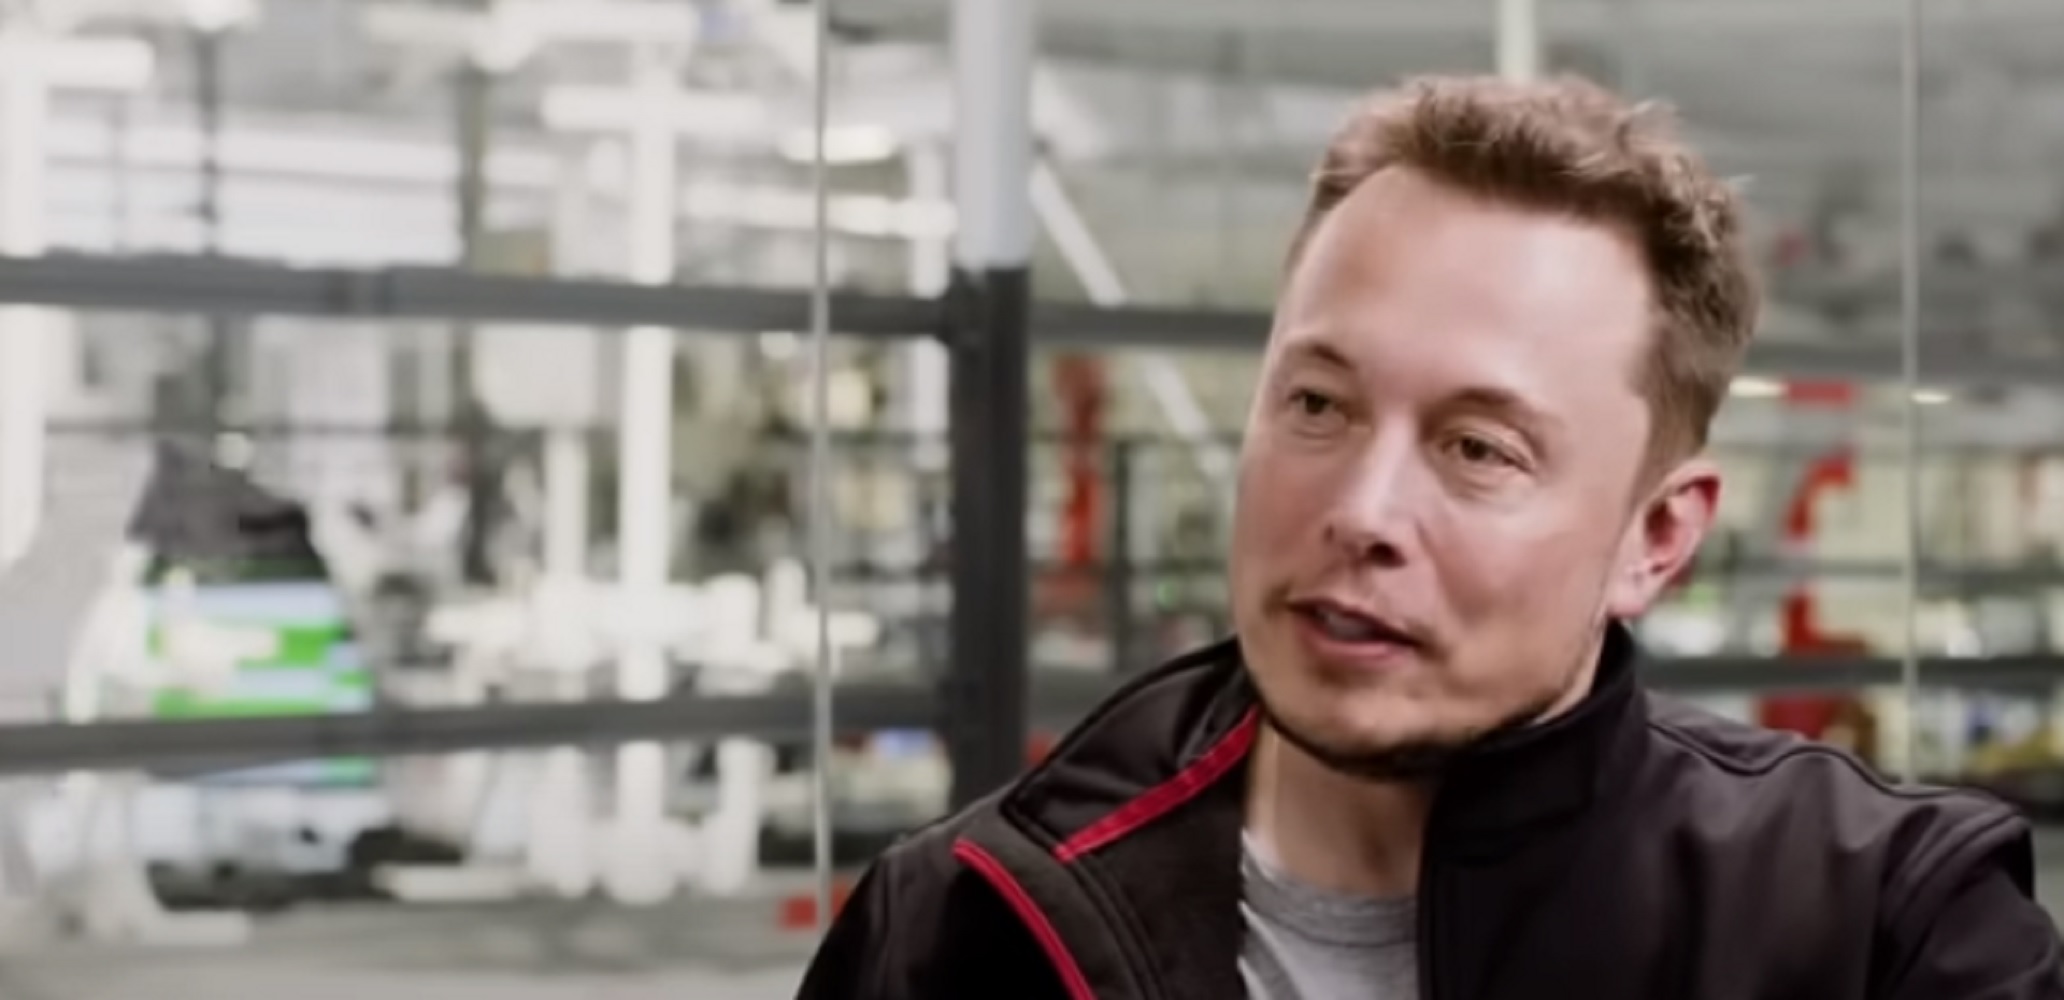 Elon Musk (Foto: Reprodução)